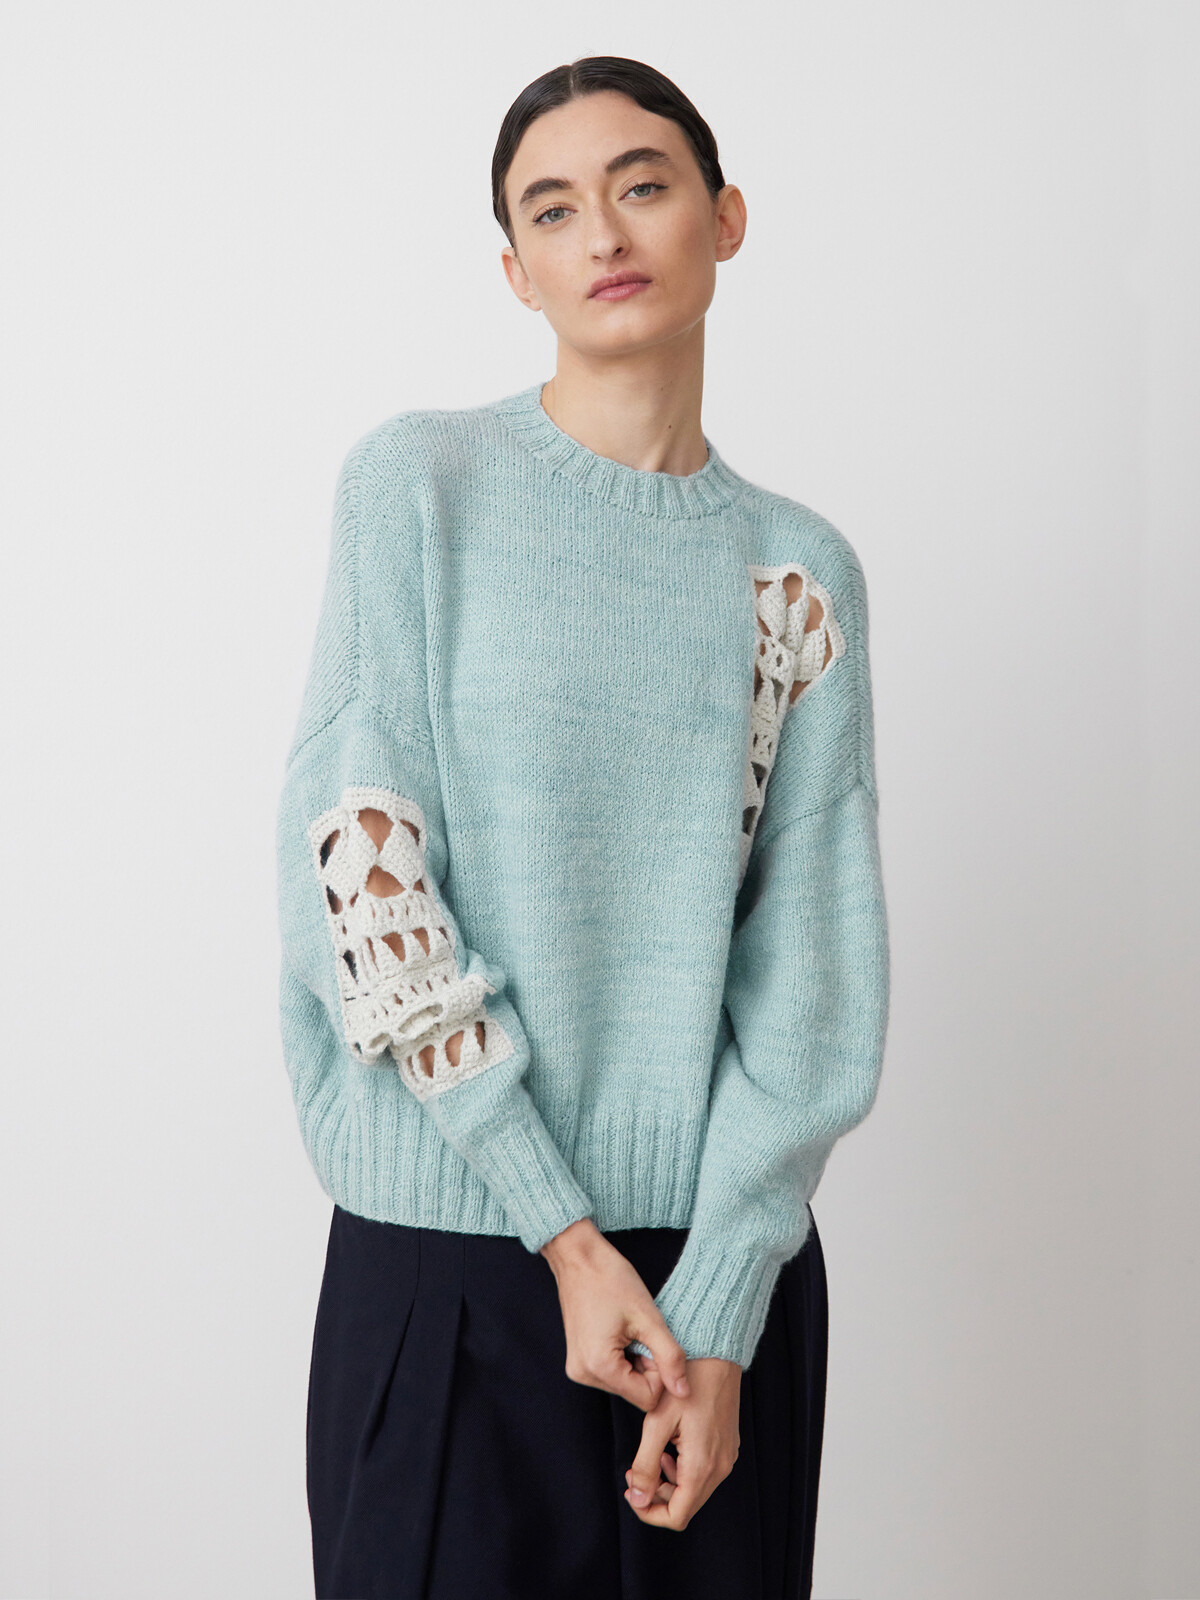 Mending crochet sweater